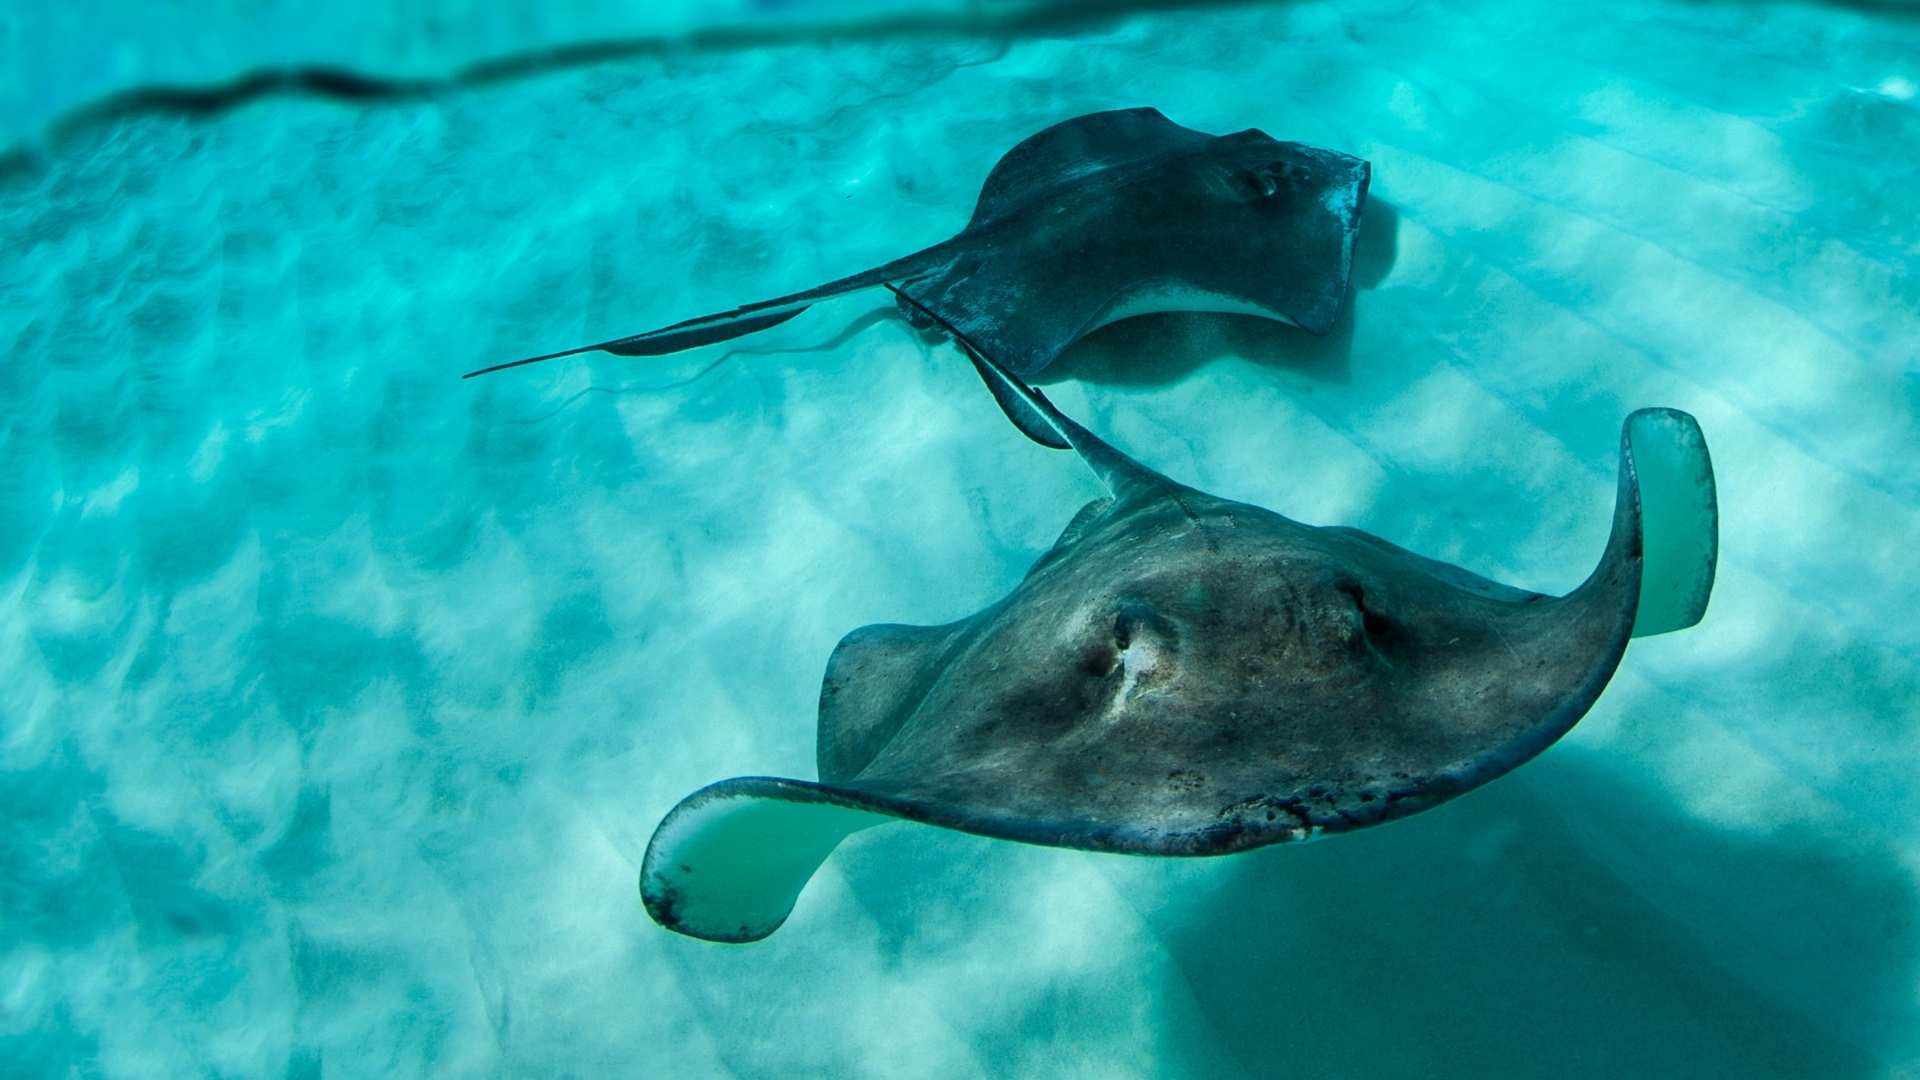 Two small stingrays swimming underwater.